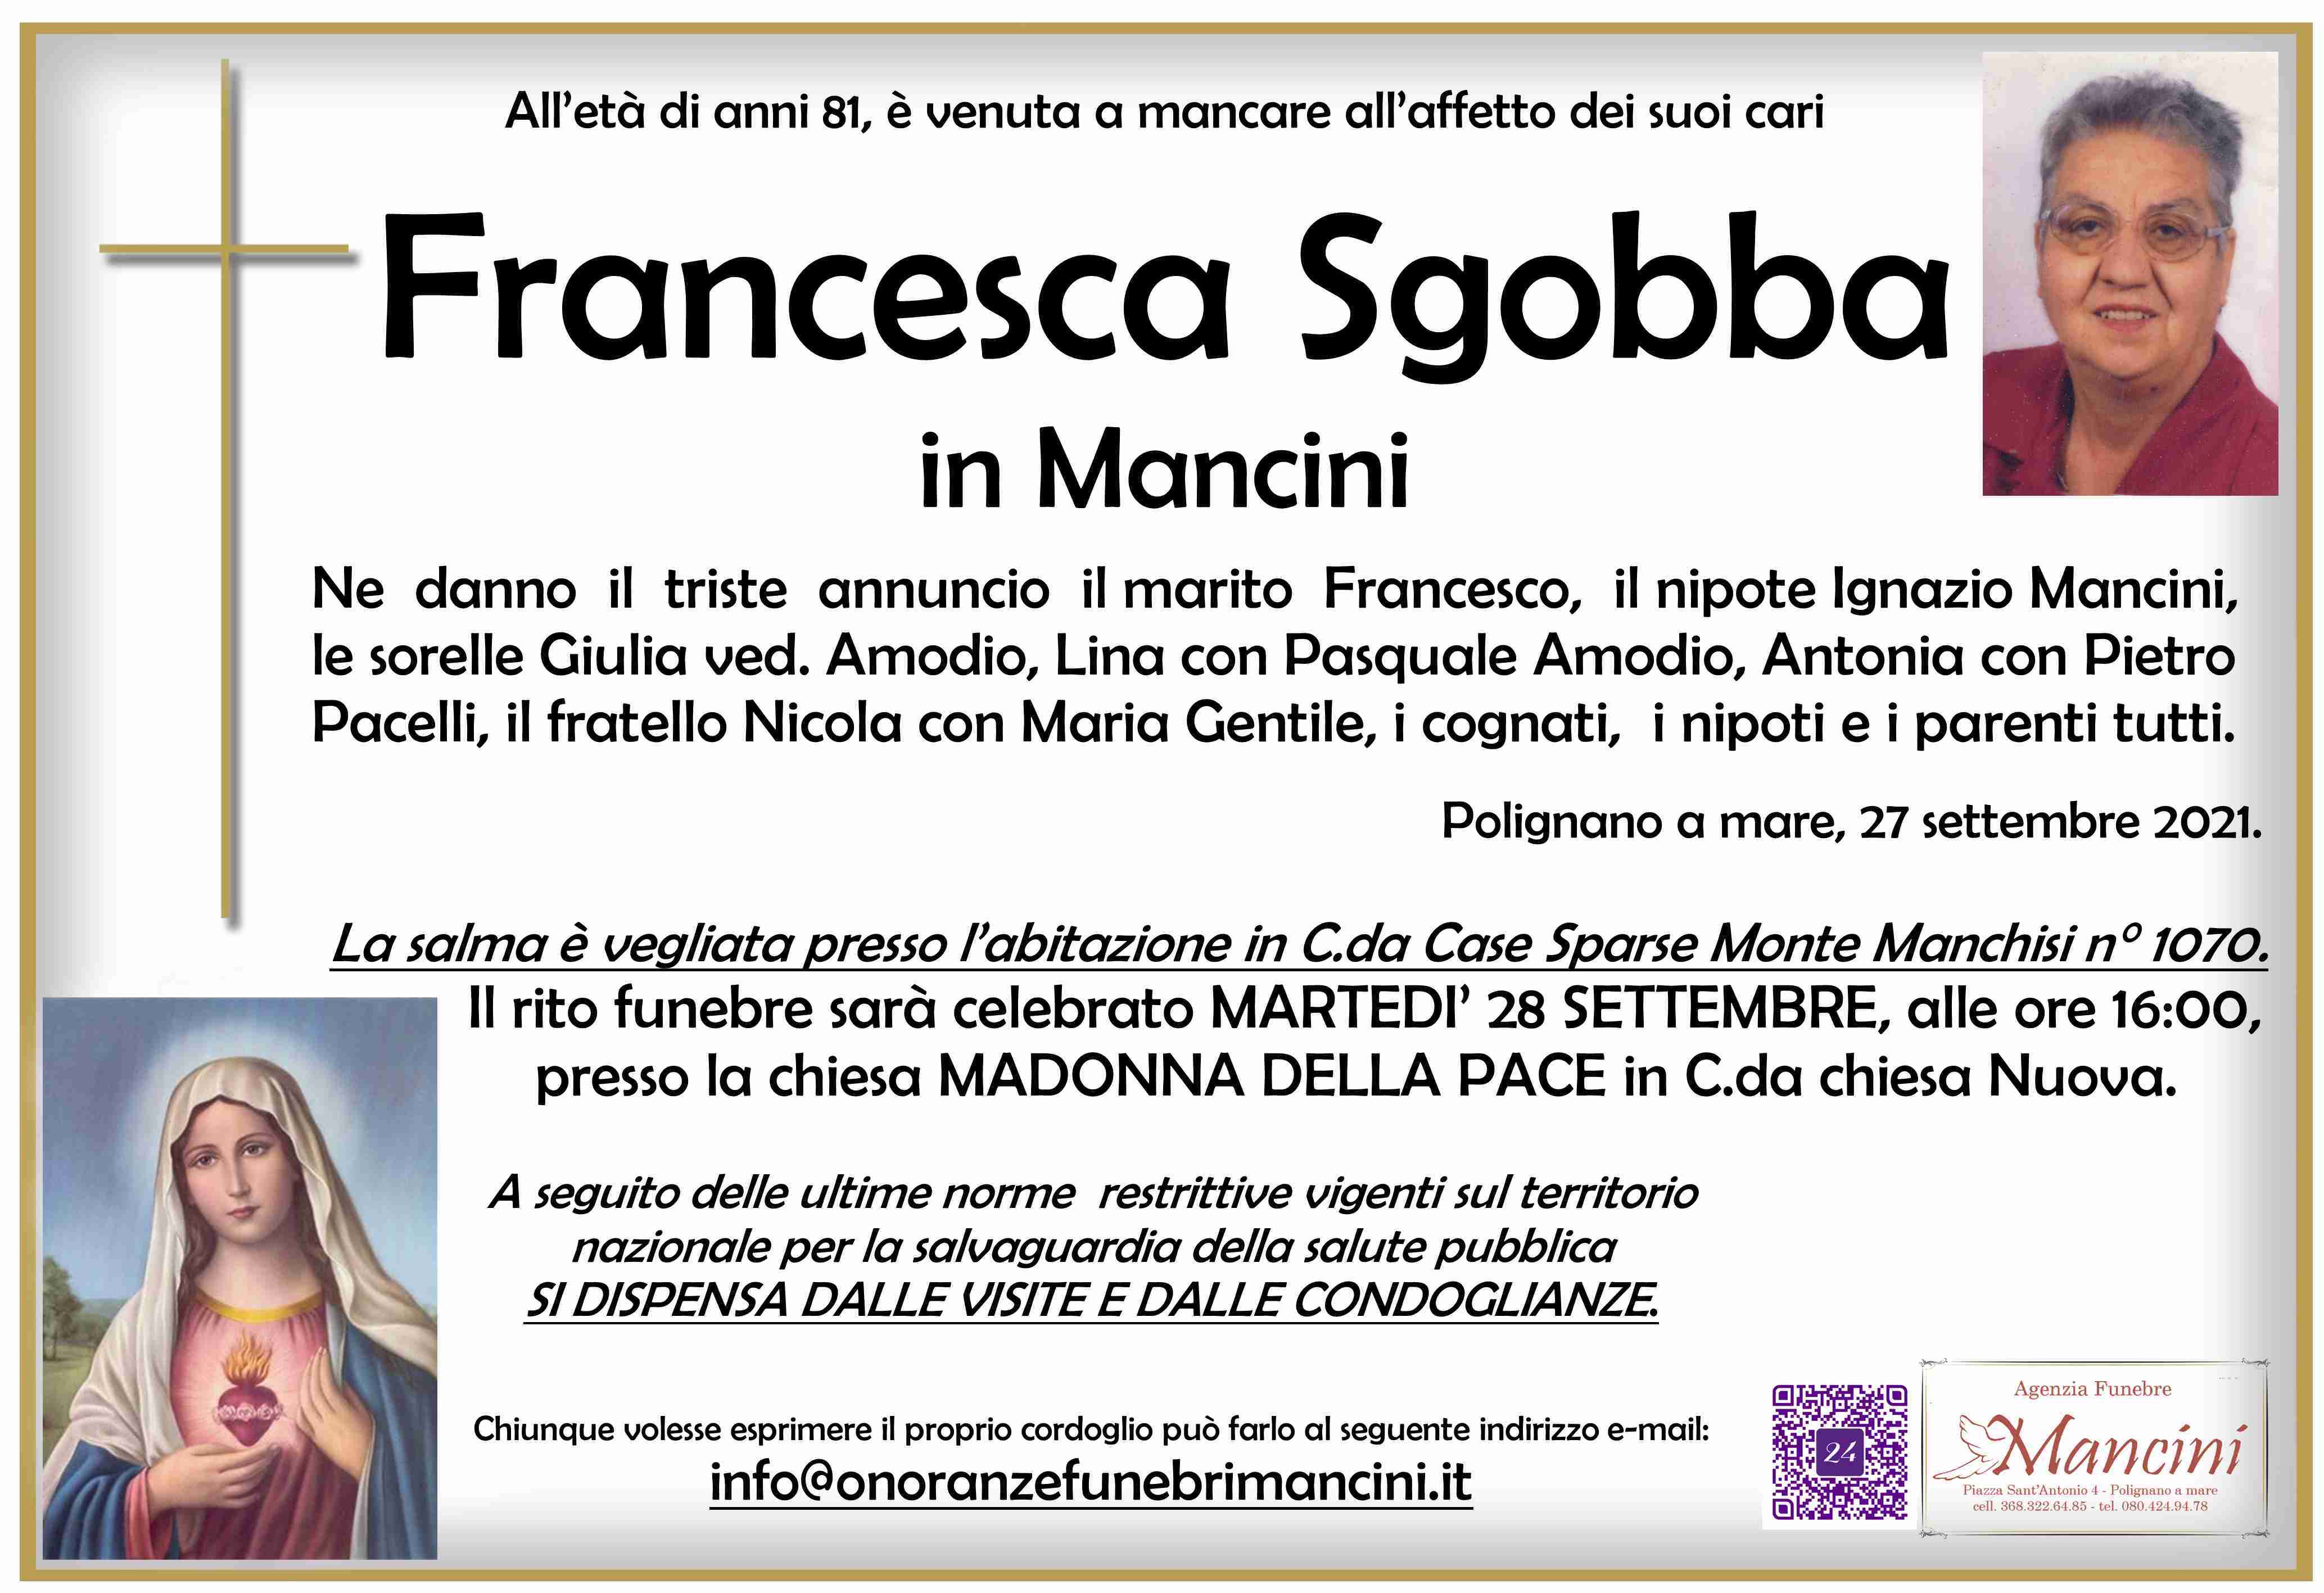 Francesca Sgobba